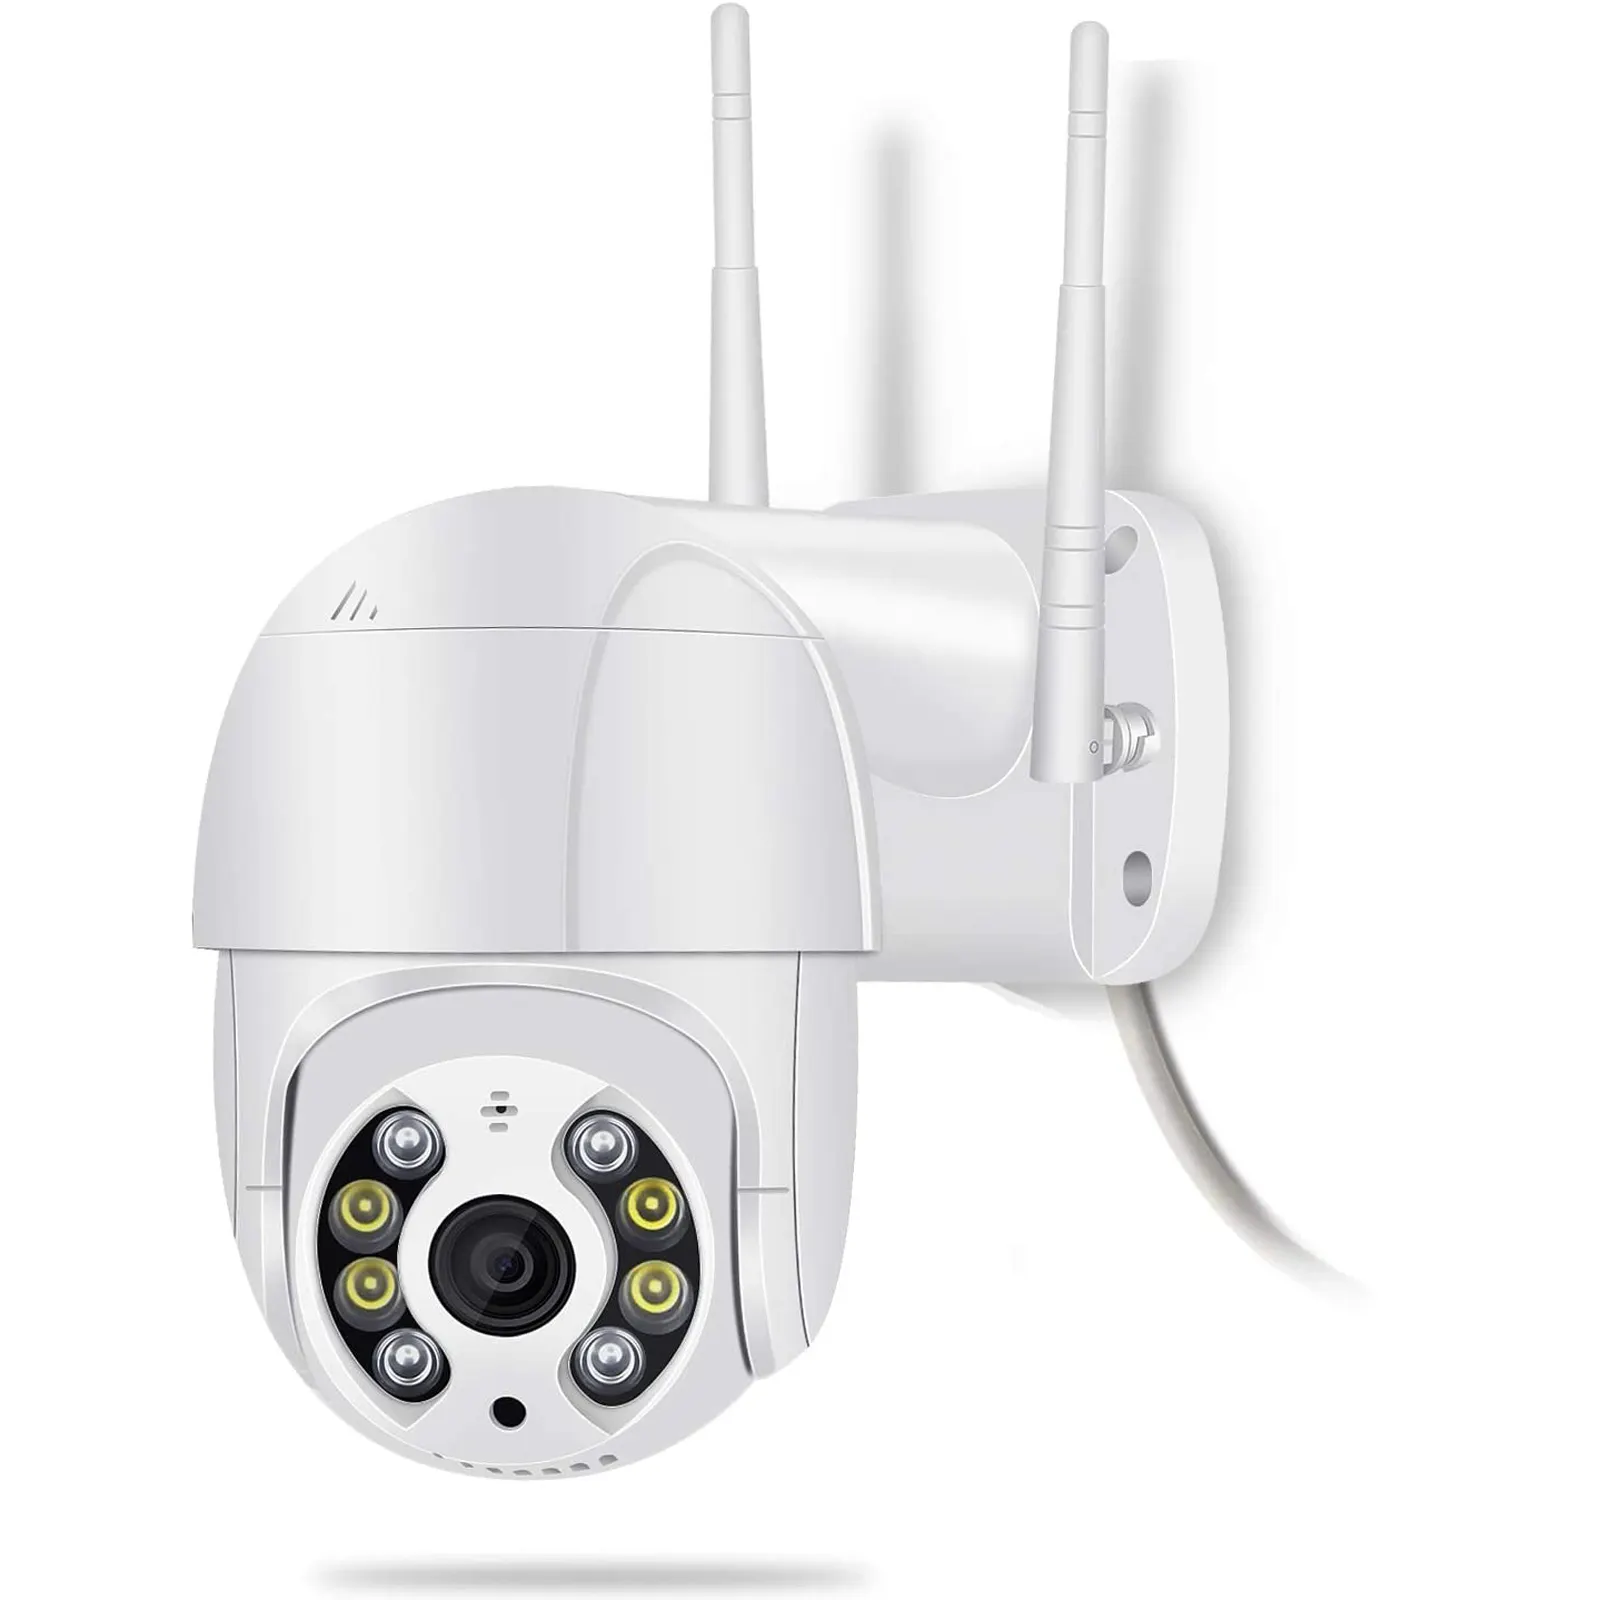 حار بيع XM-D11 Hd 1080P سحابة اللاسلكية Ptz على الانترنت واي فاي 360 درجة عن مراقبة مسجل اتجاهين الصوت Ip كاميرا